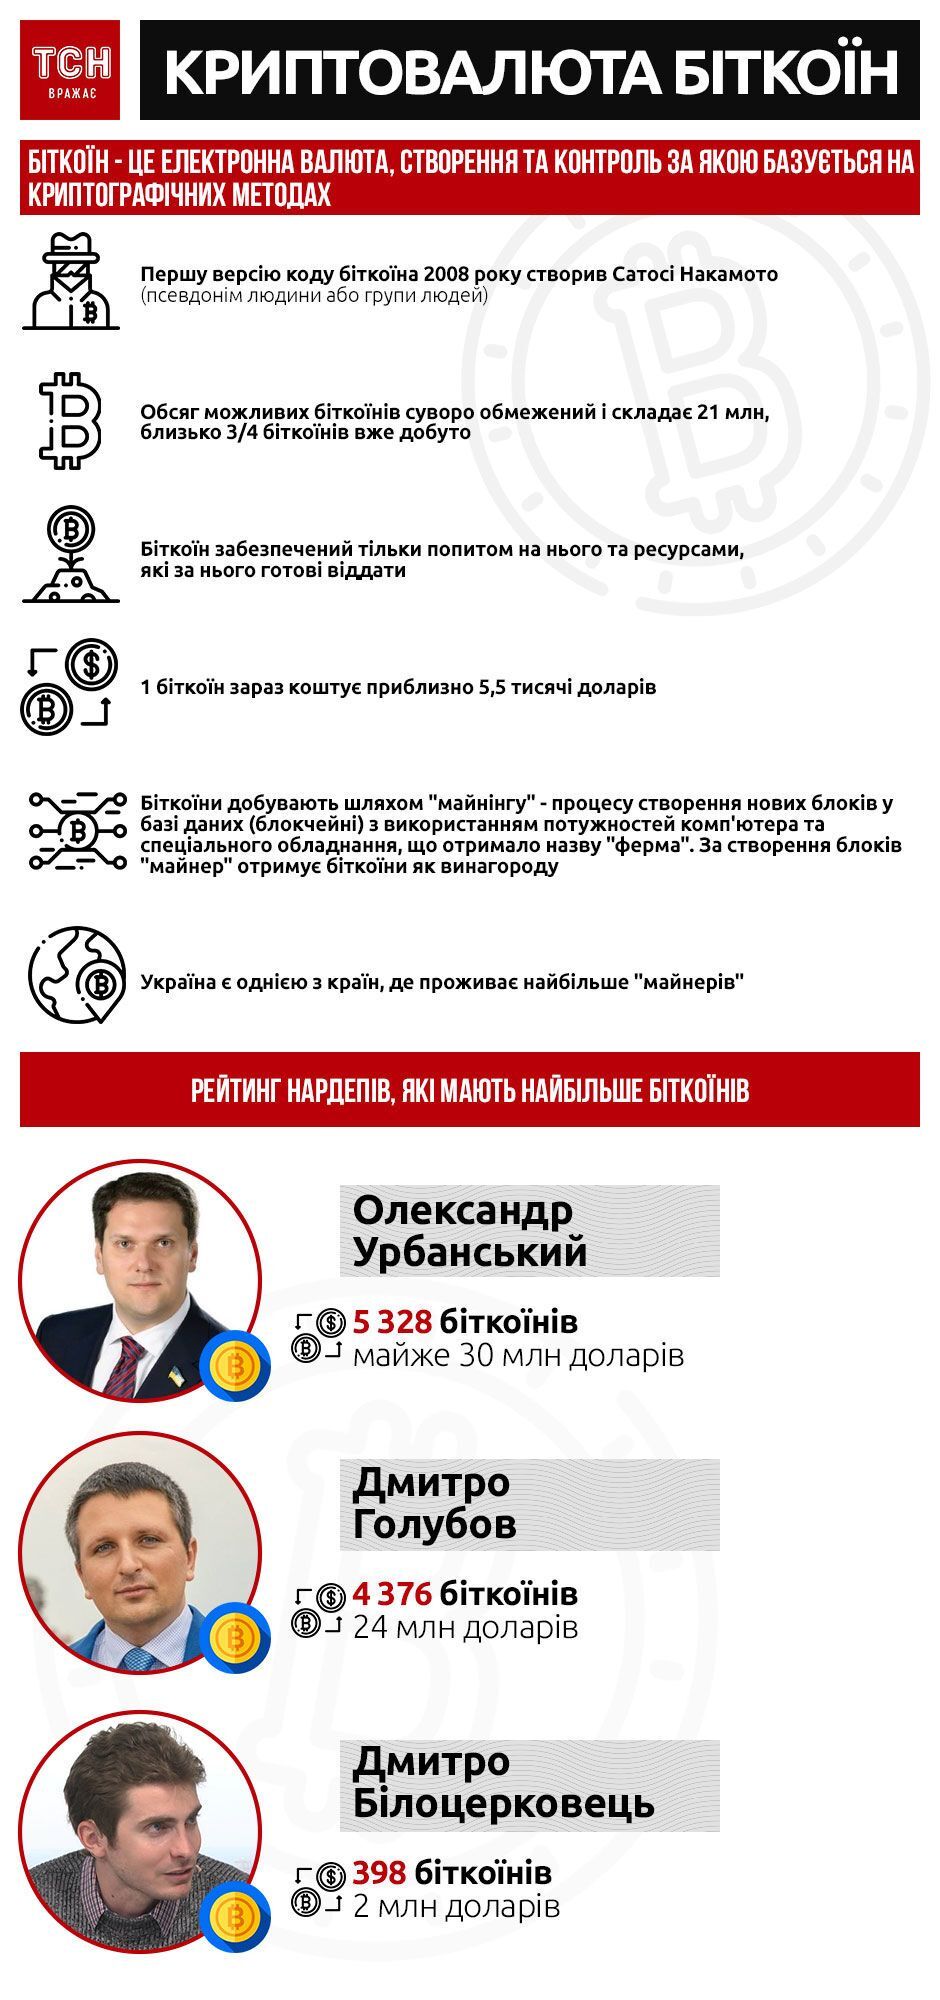 На мільйони доларів: українські депутати почали активно купувати біткоїни